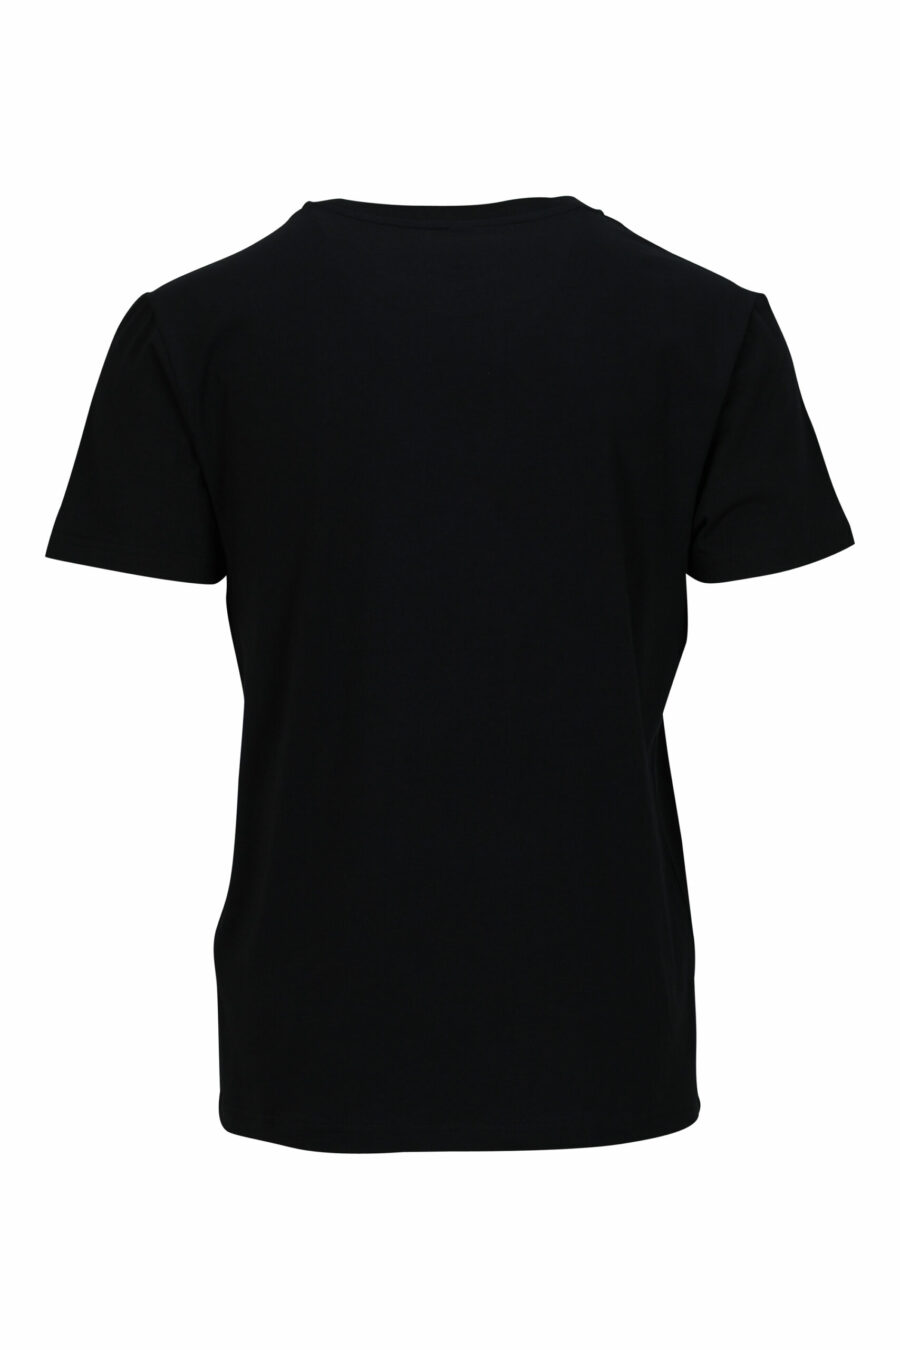 T-shirt noir avec minilogue "swim" - 667113673530 1 à l'échelle